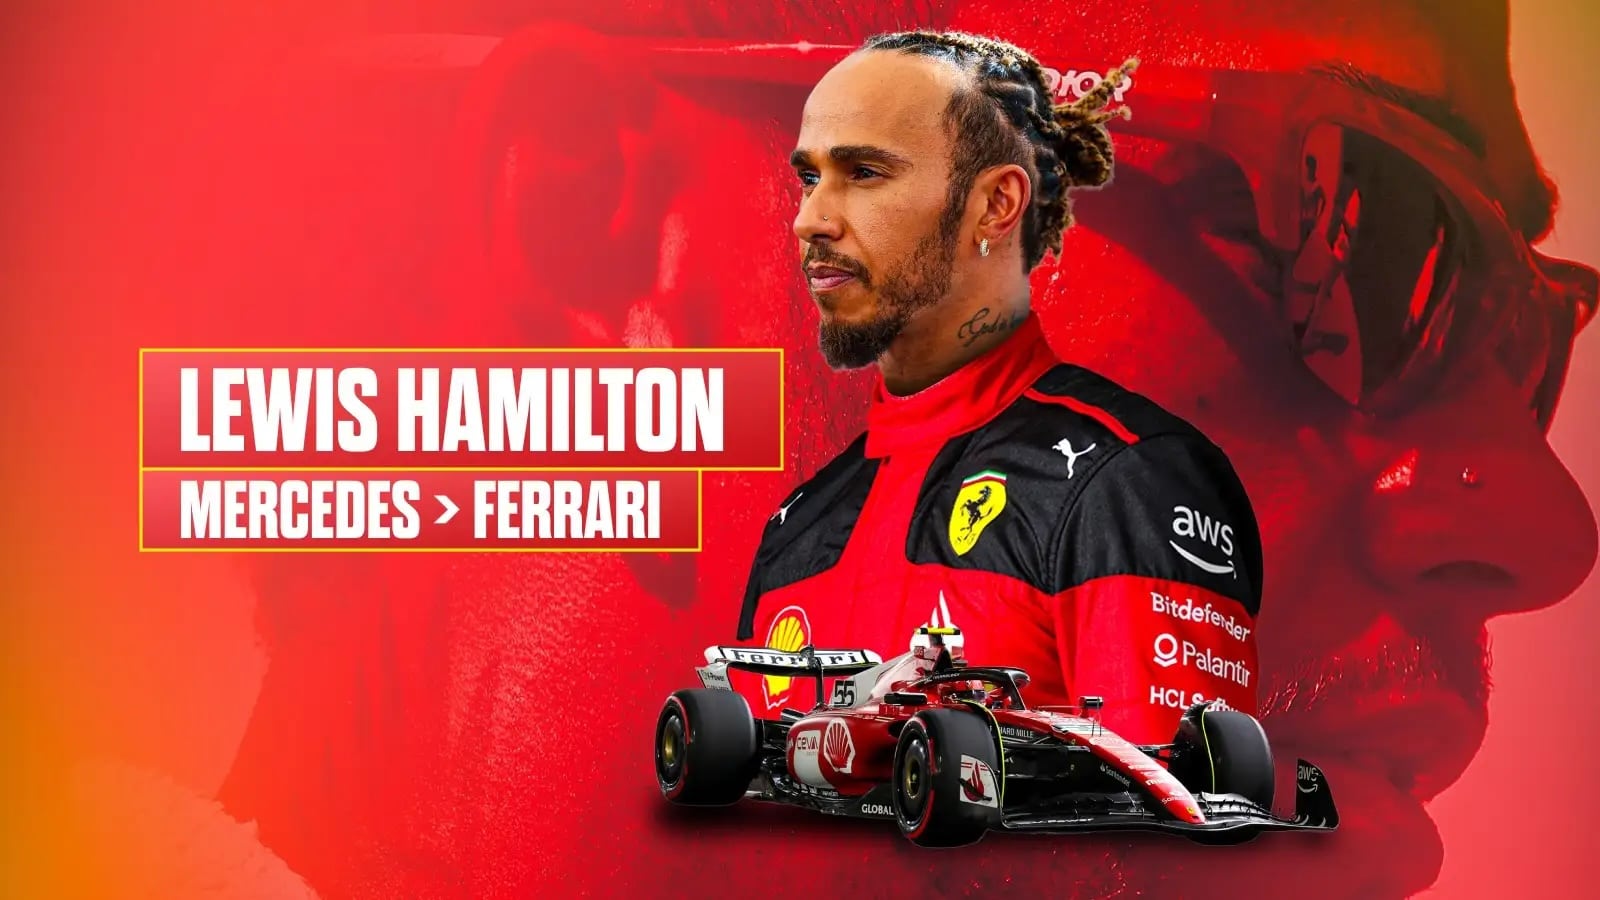 Lewis Hamilton moves to Ferrari